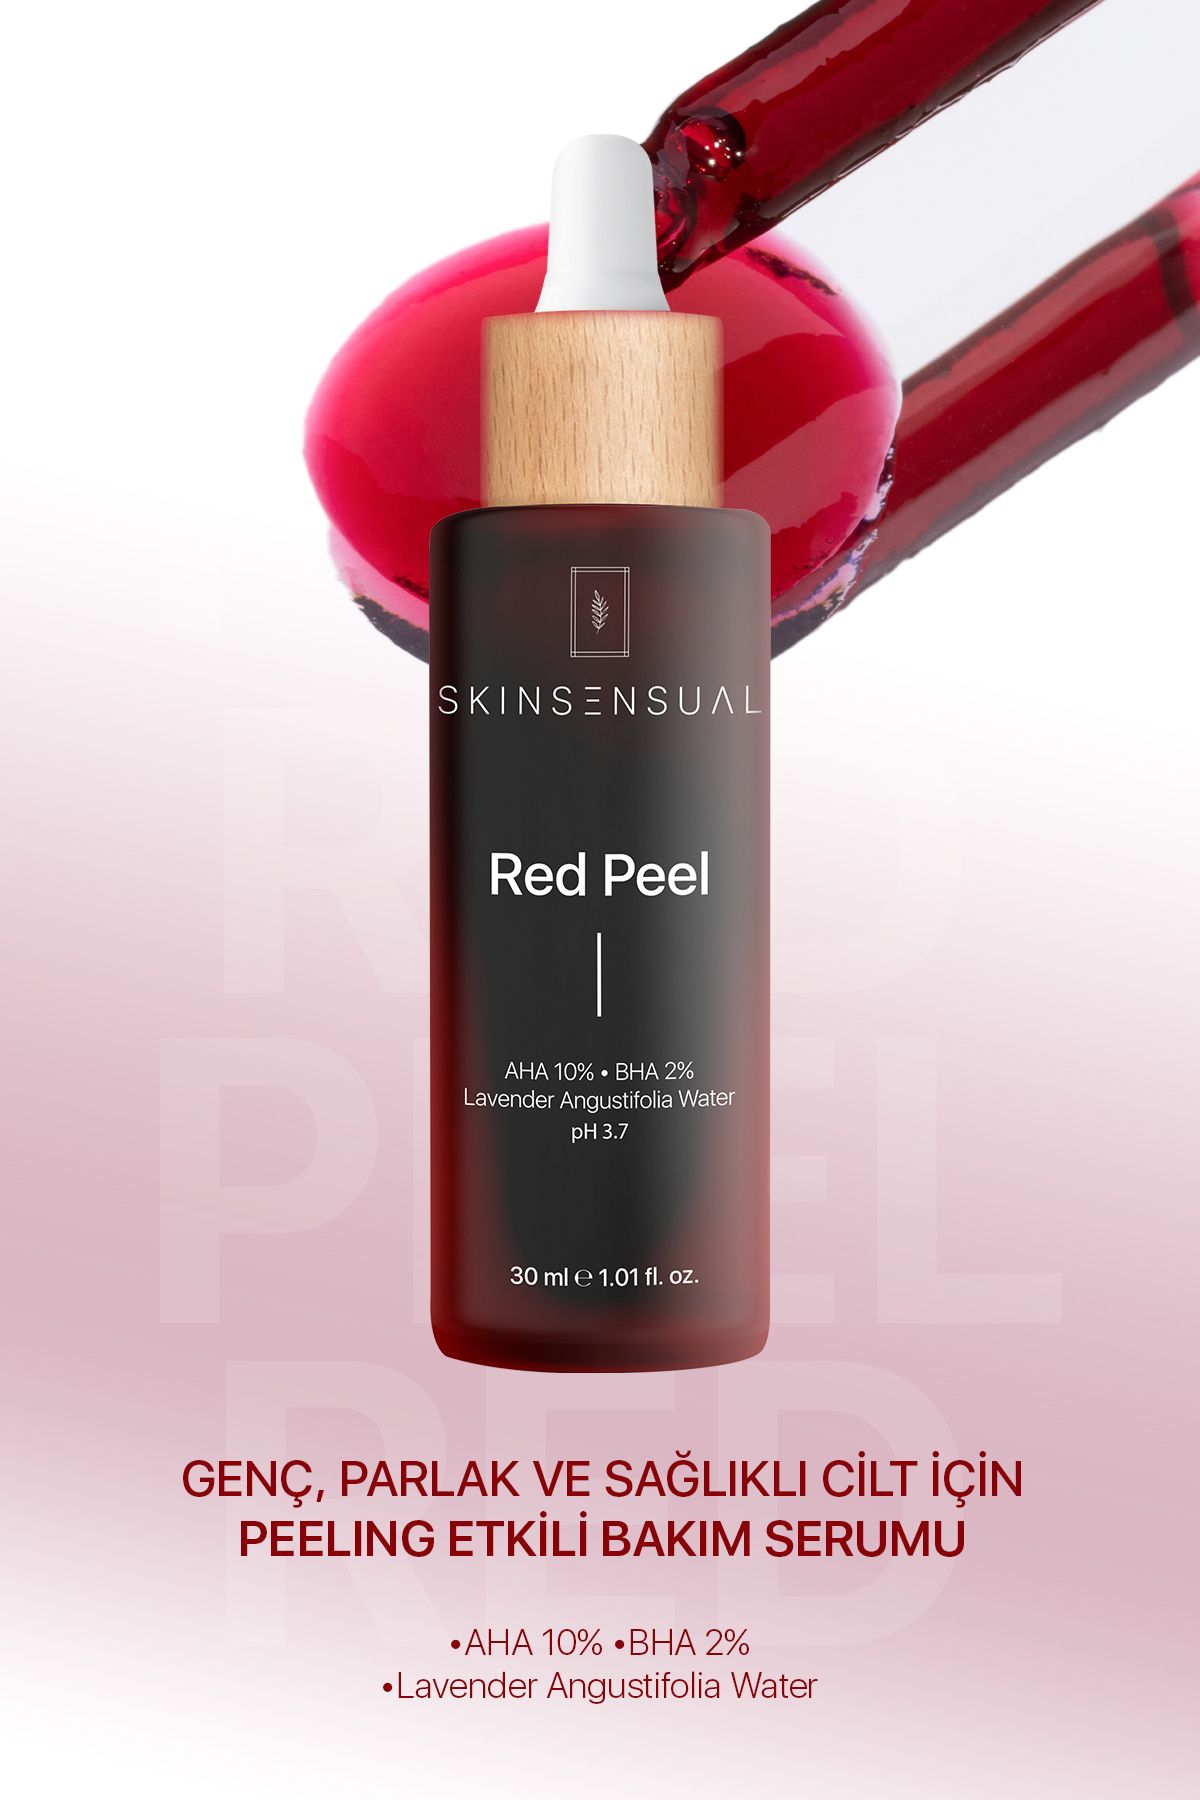 Skin Sensual Red Peel (aha 10%, Bha 2%) Canlandırıcı Ve Cilt Tonu Eşitleyici Kırmızı Peeling Serum